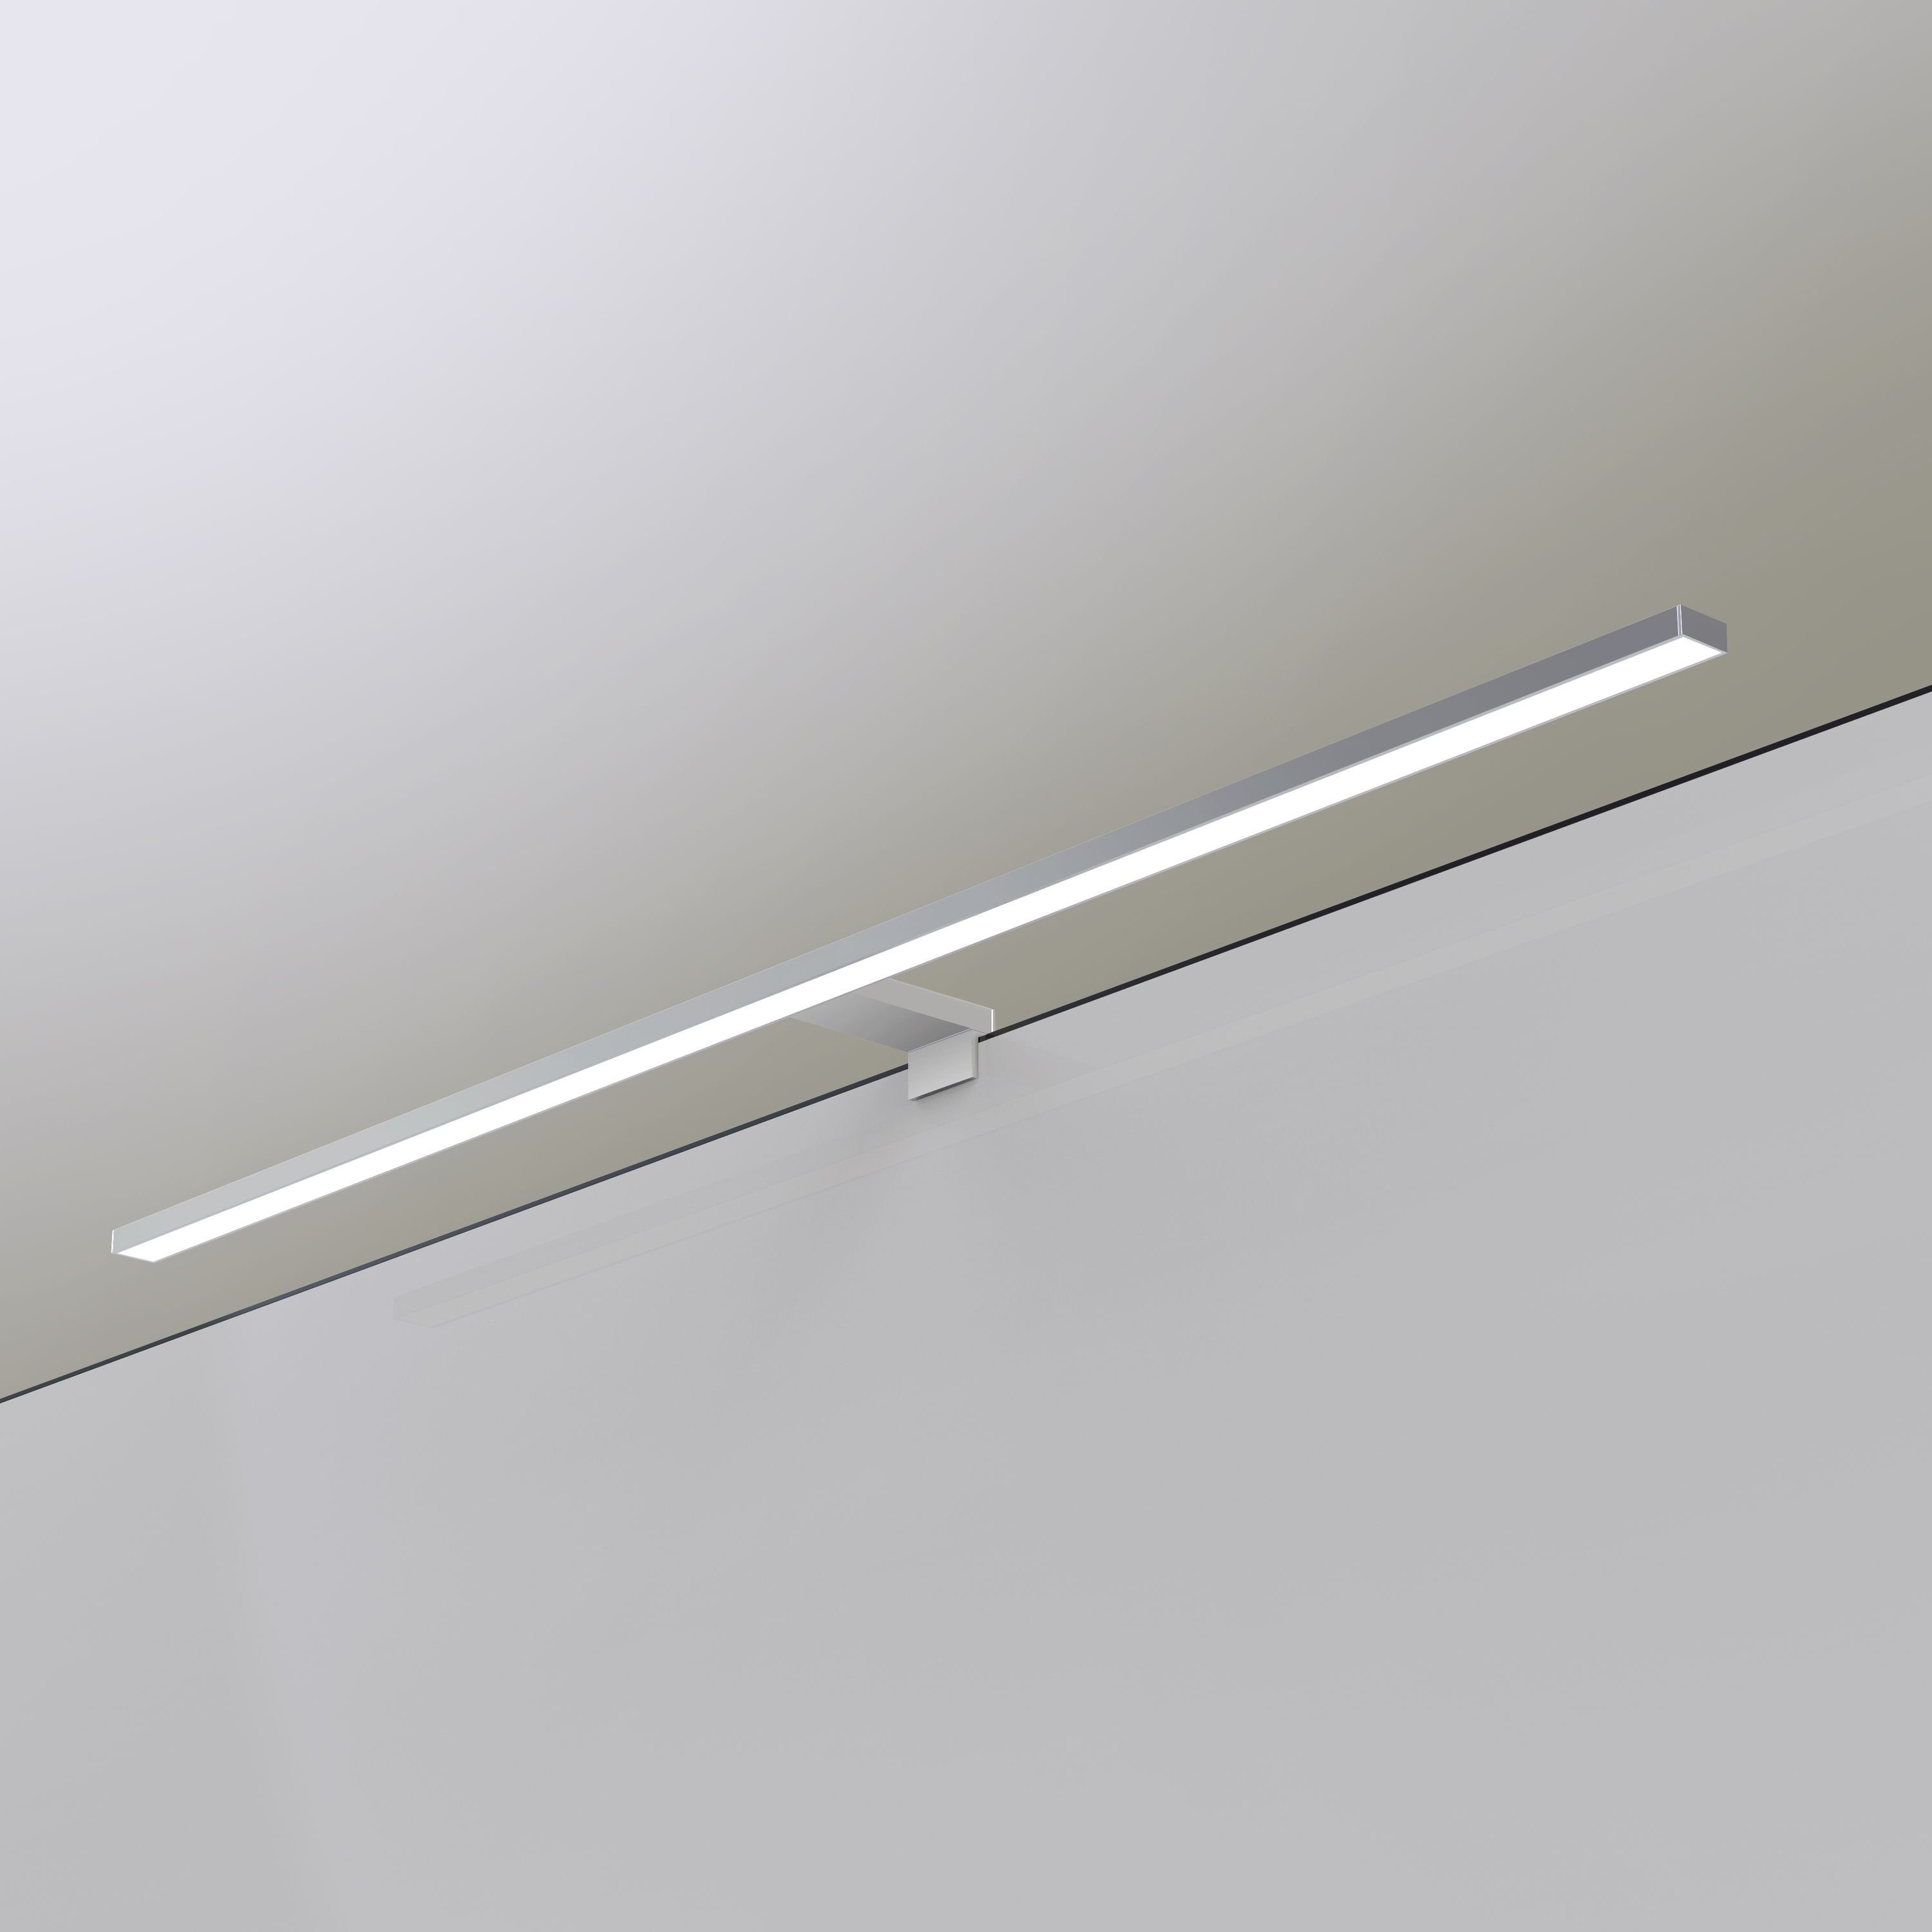 Badlampe 100cm LED Badleuchte silbergrau, Spiegelleuchte 230V, kalb Spiegellampe neutralweiß